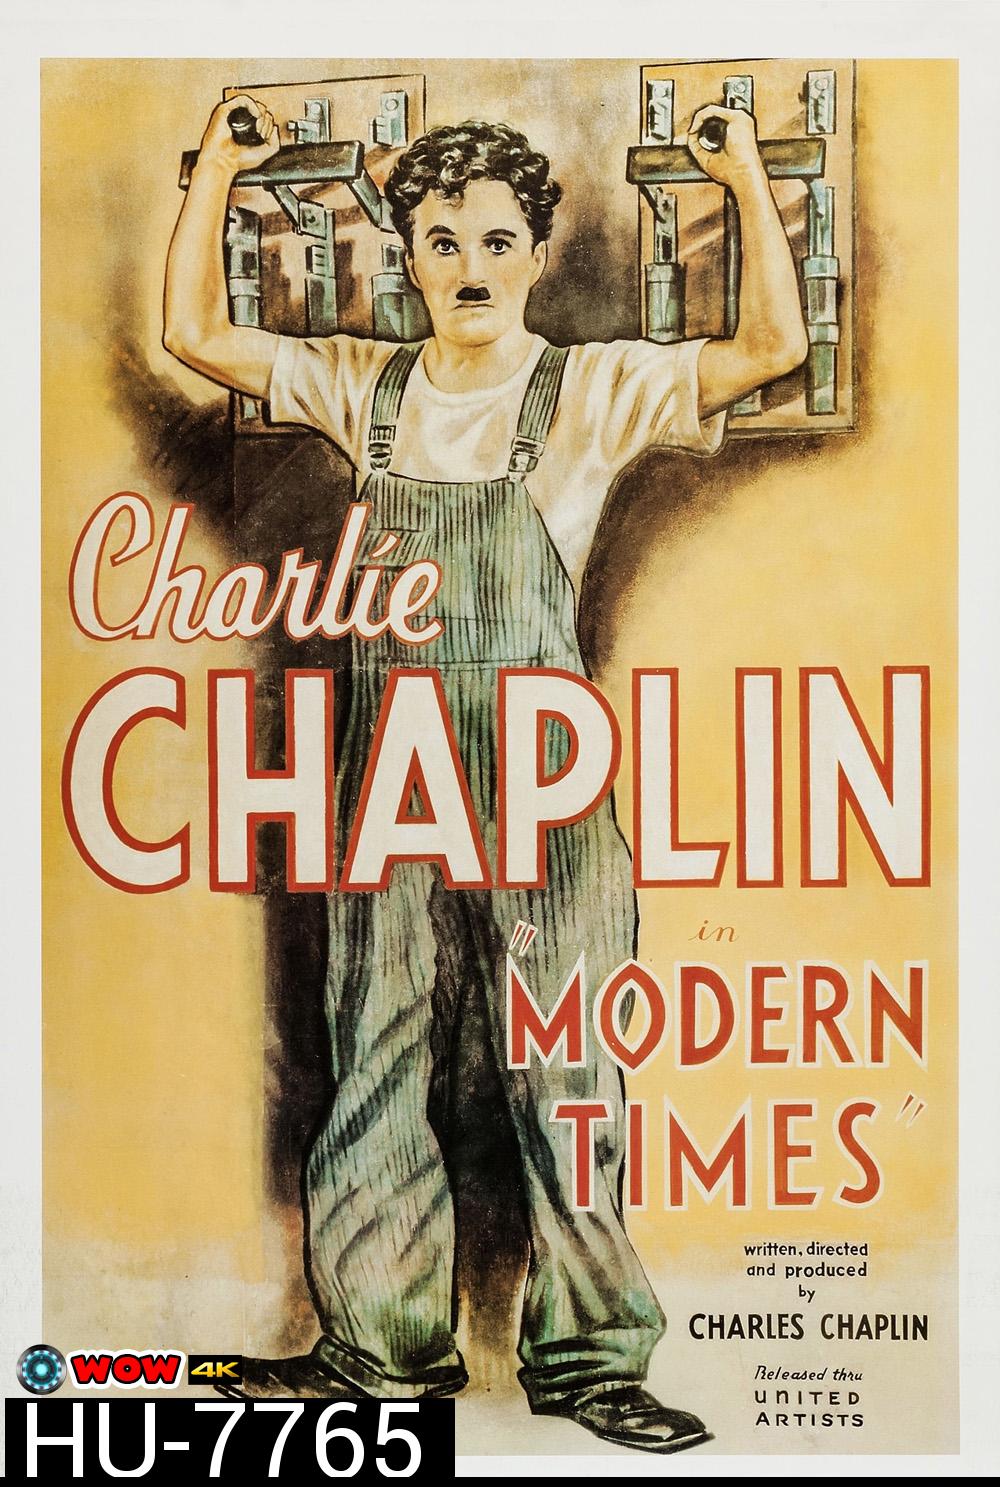 Charlie Chaplin: Modern Times ตอน เฮงบ่เฮงแต่บ่ตาย (พ.ศ. 2479) [พากย์อีสาน]